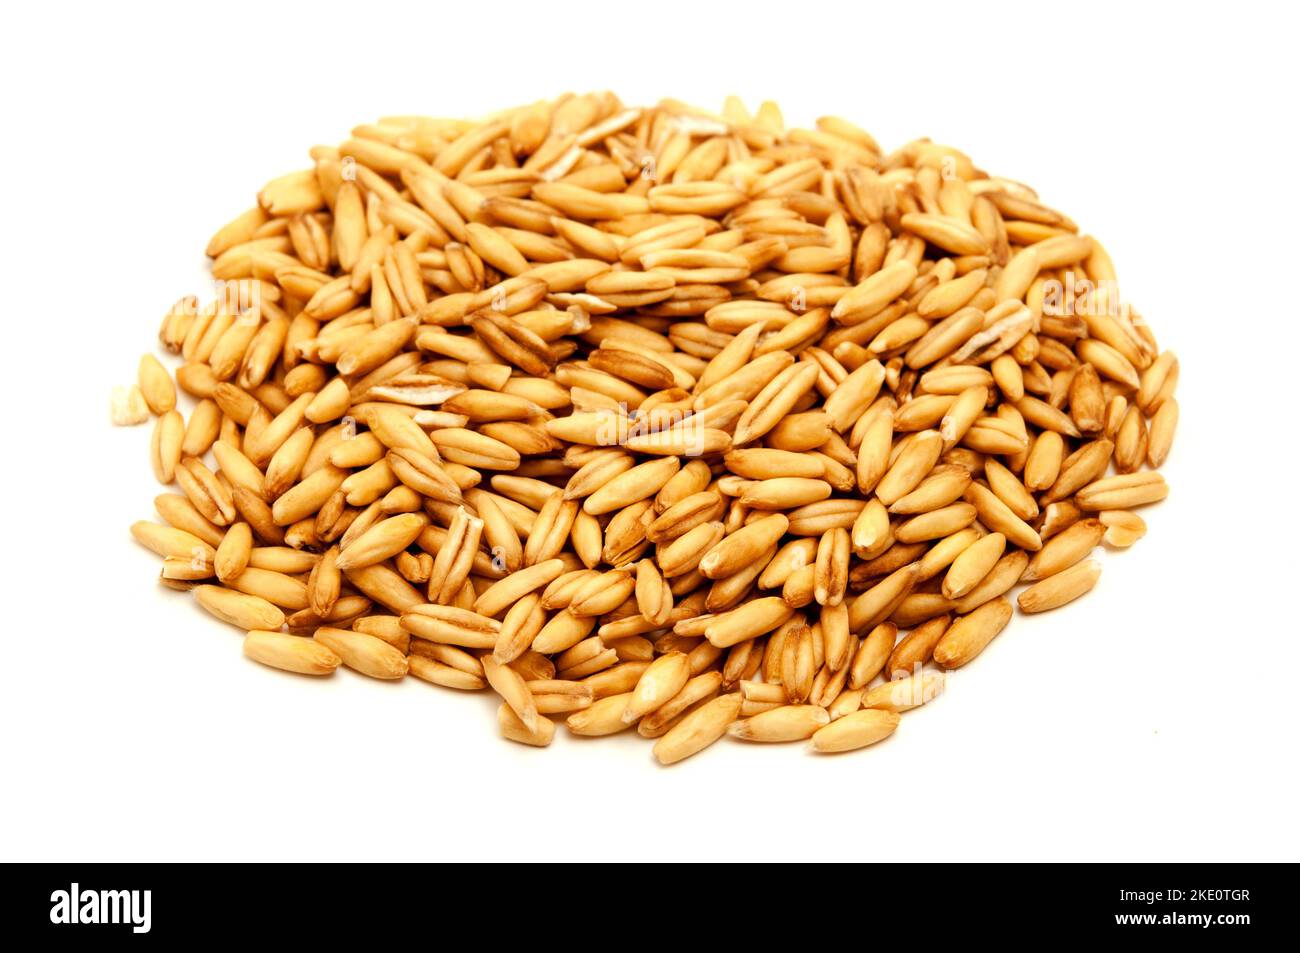 Hafer-Getreide auf weißem Hintergrund Stockfoto